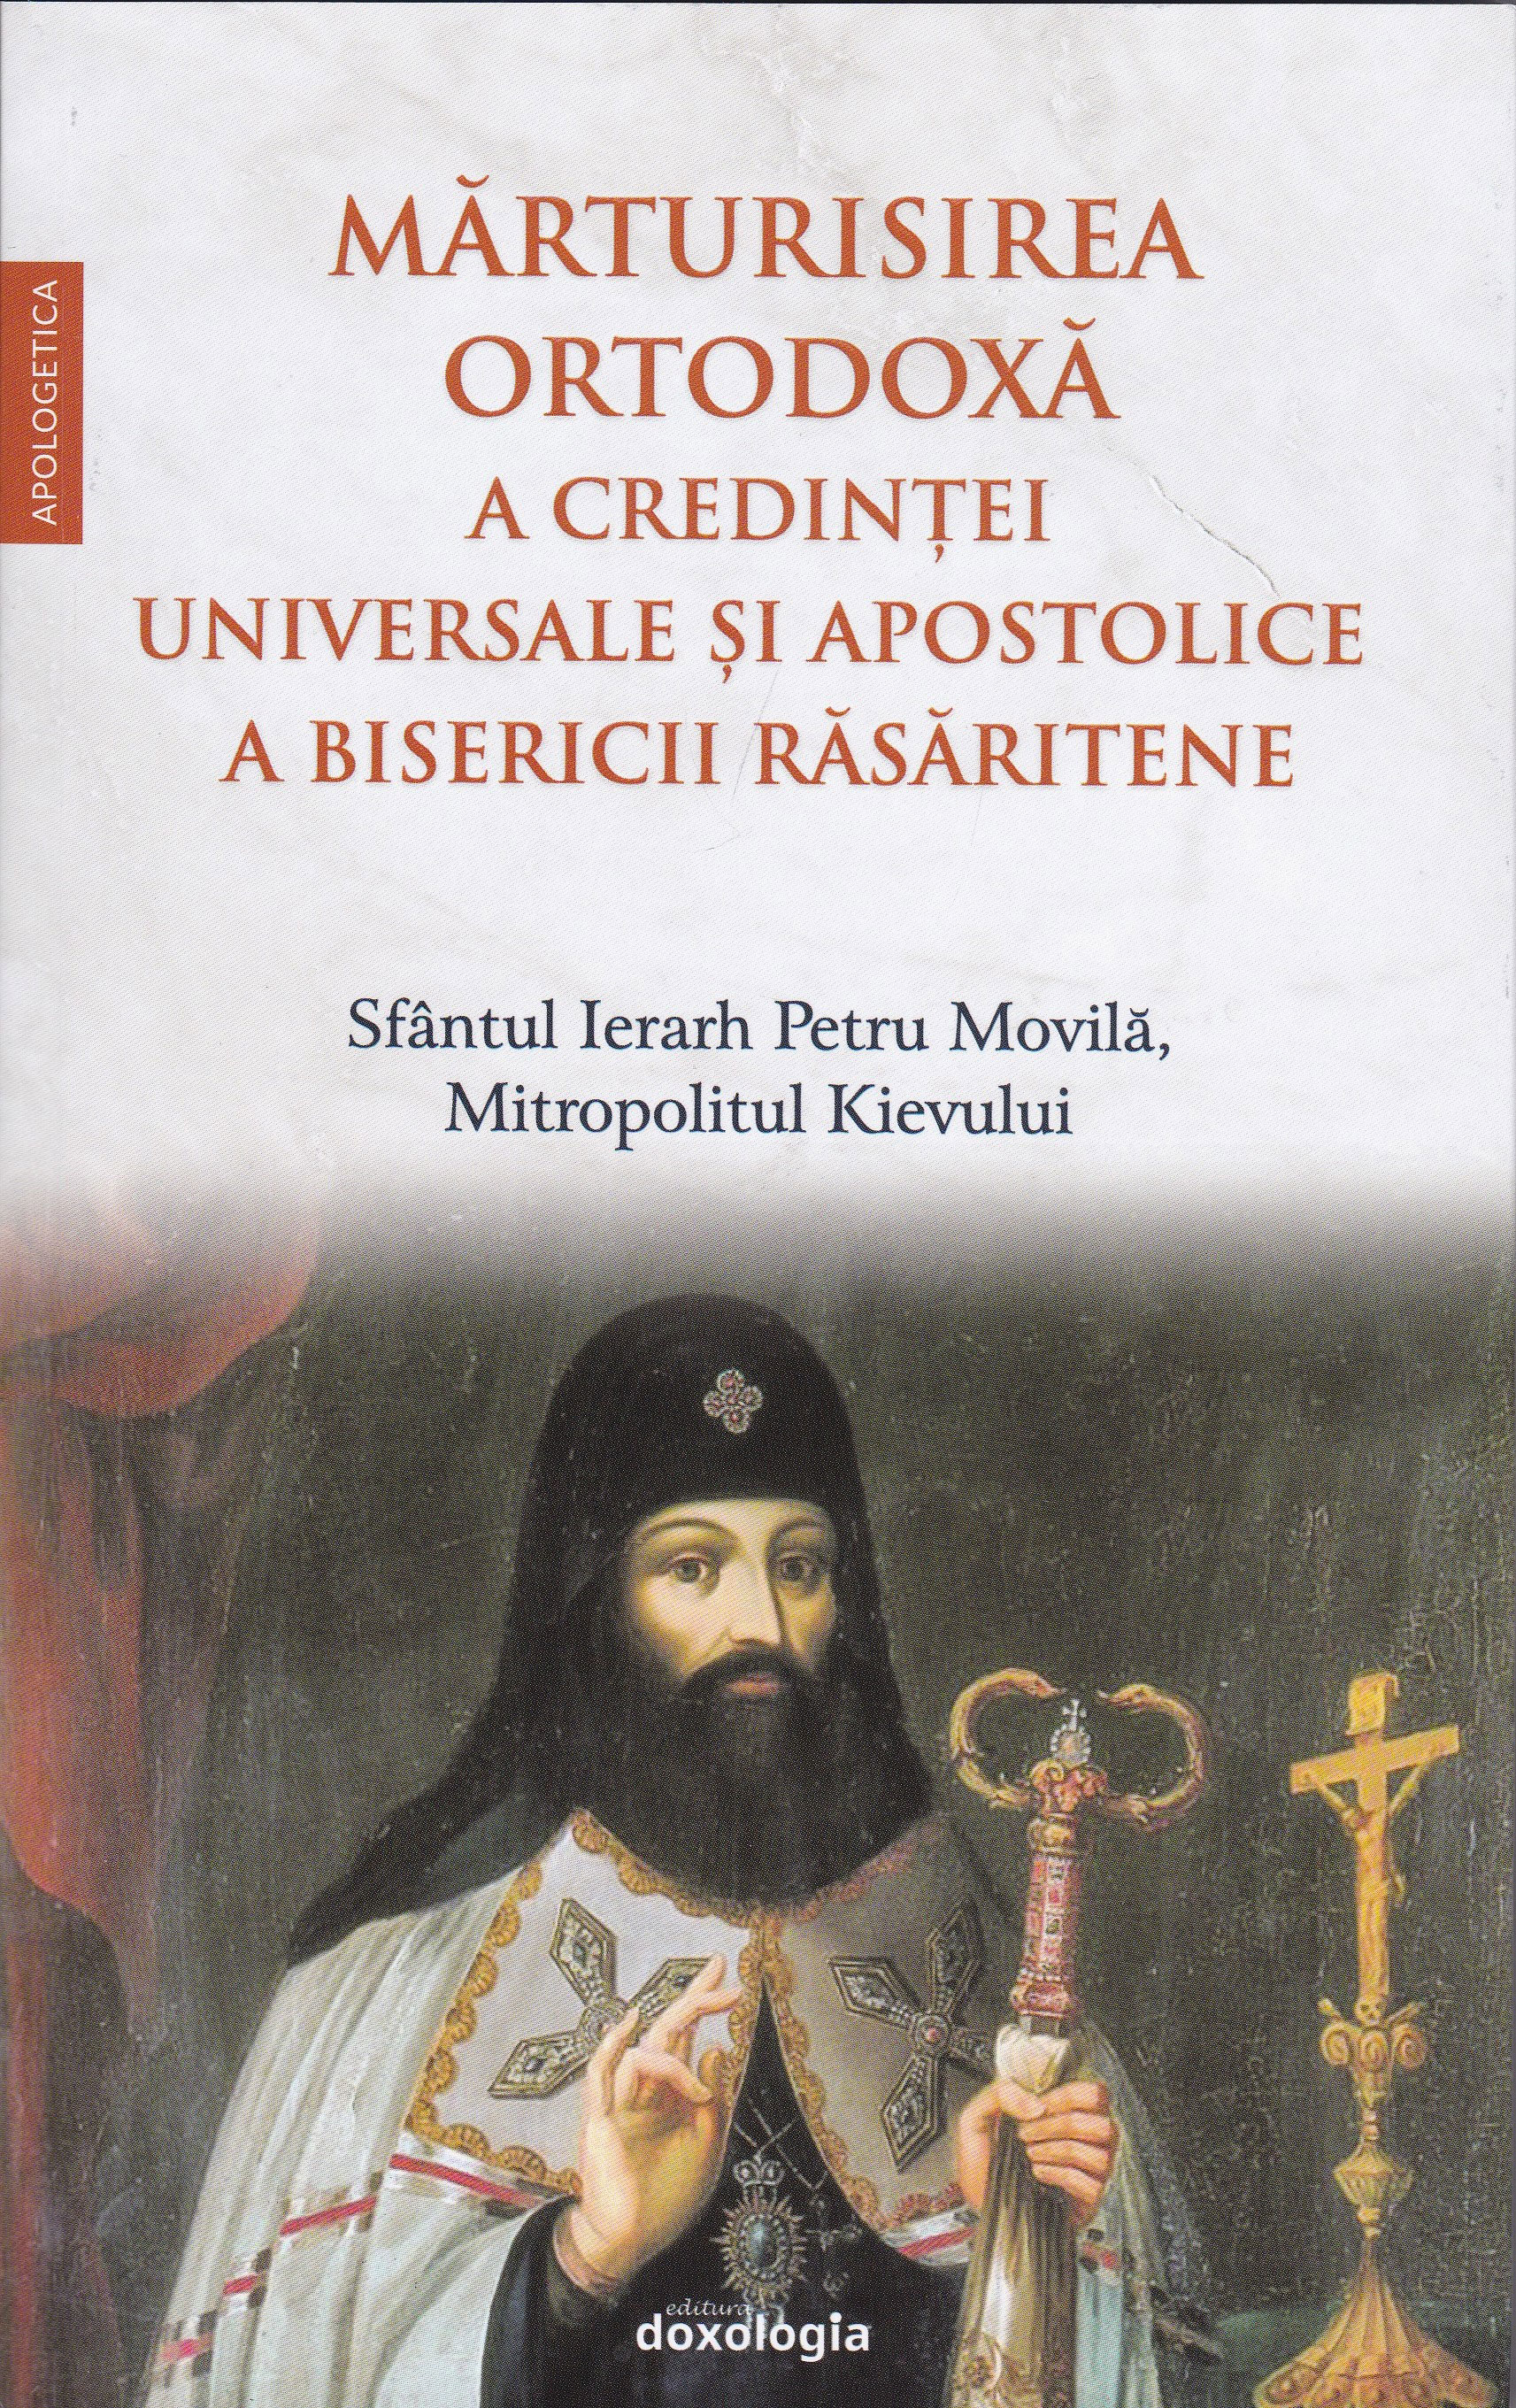 Marturisirea ortodoxa a credintei universale si apostolice a Bisericii Rasaritene - Sfantul Ierarh Petru Movila, Mitropolitul Kievului